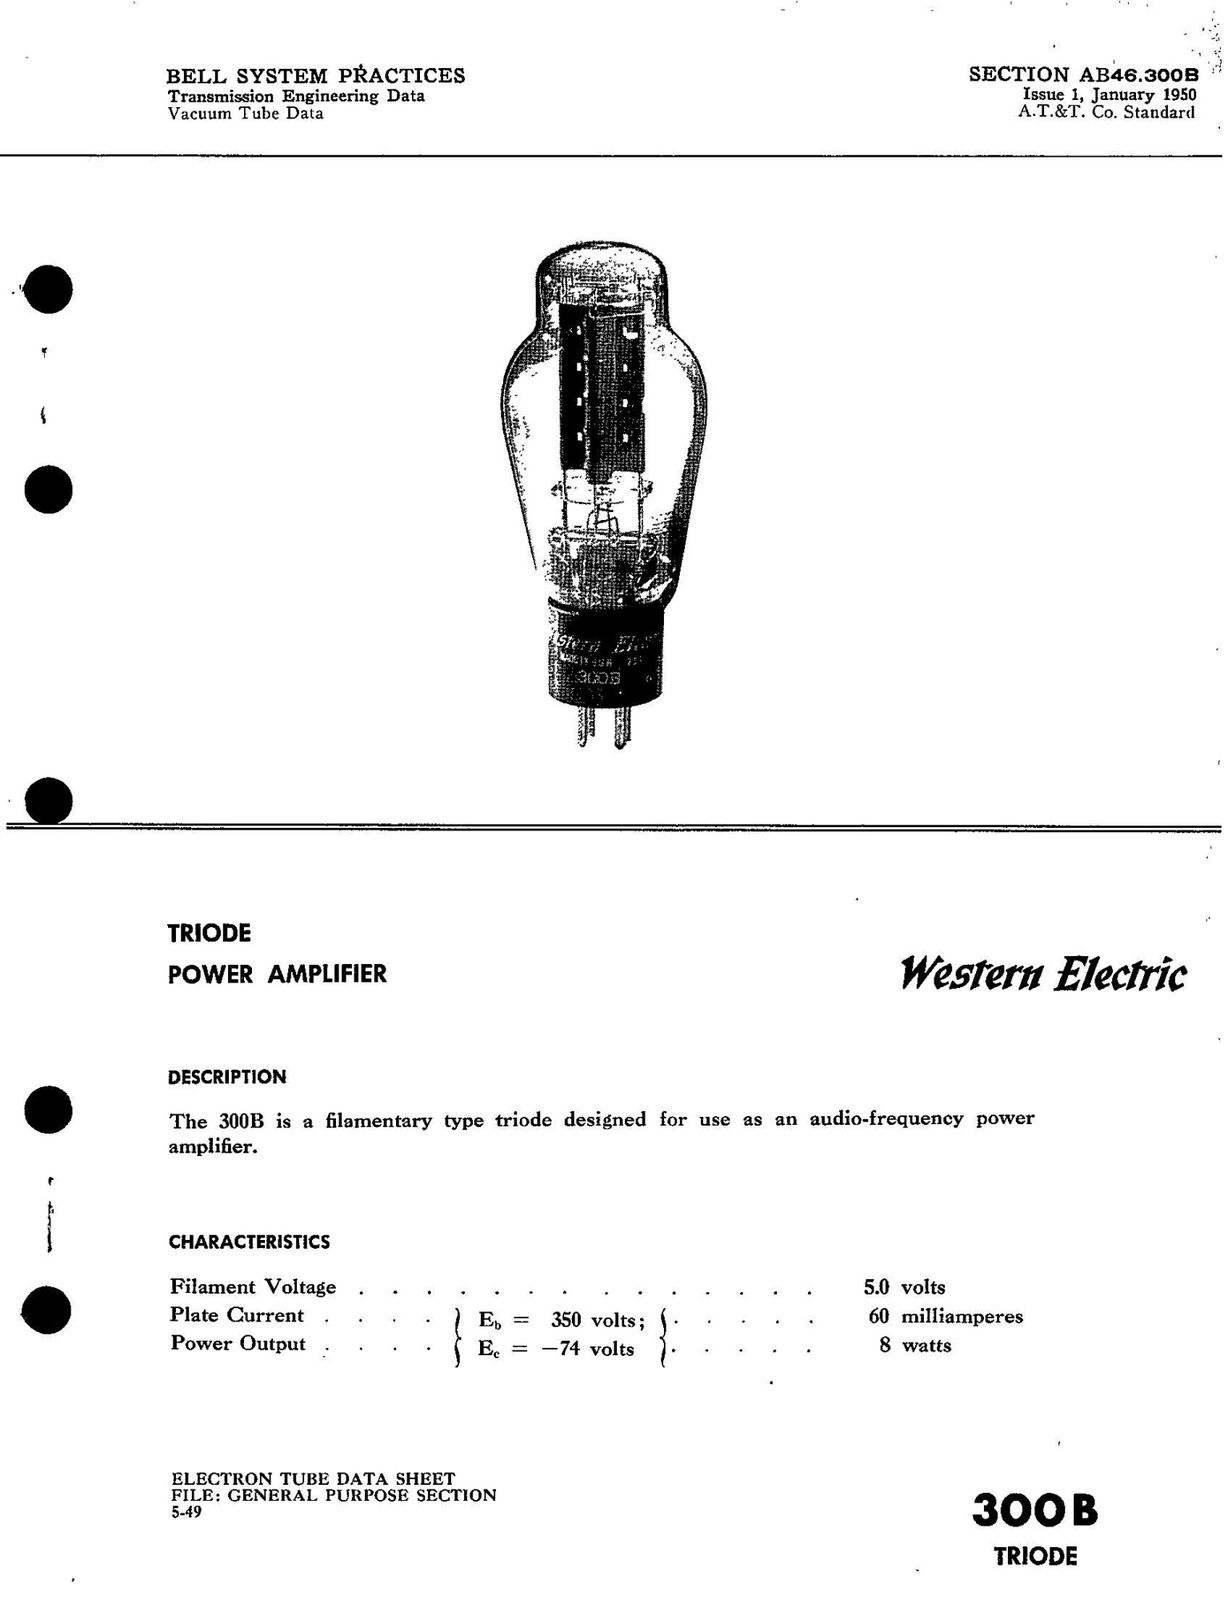 Western Electric 300B Data sheet 1950 - kendall alex